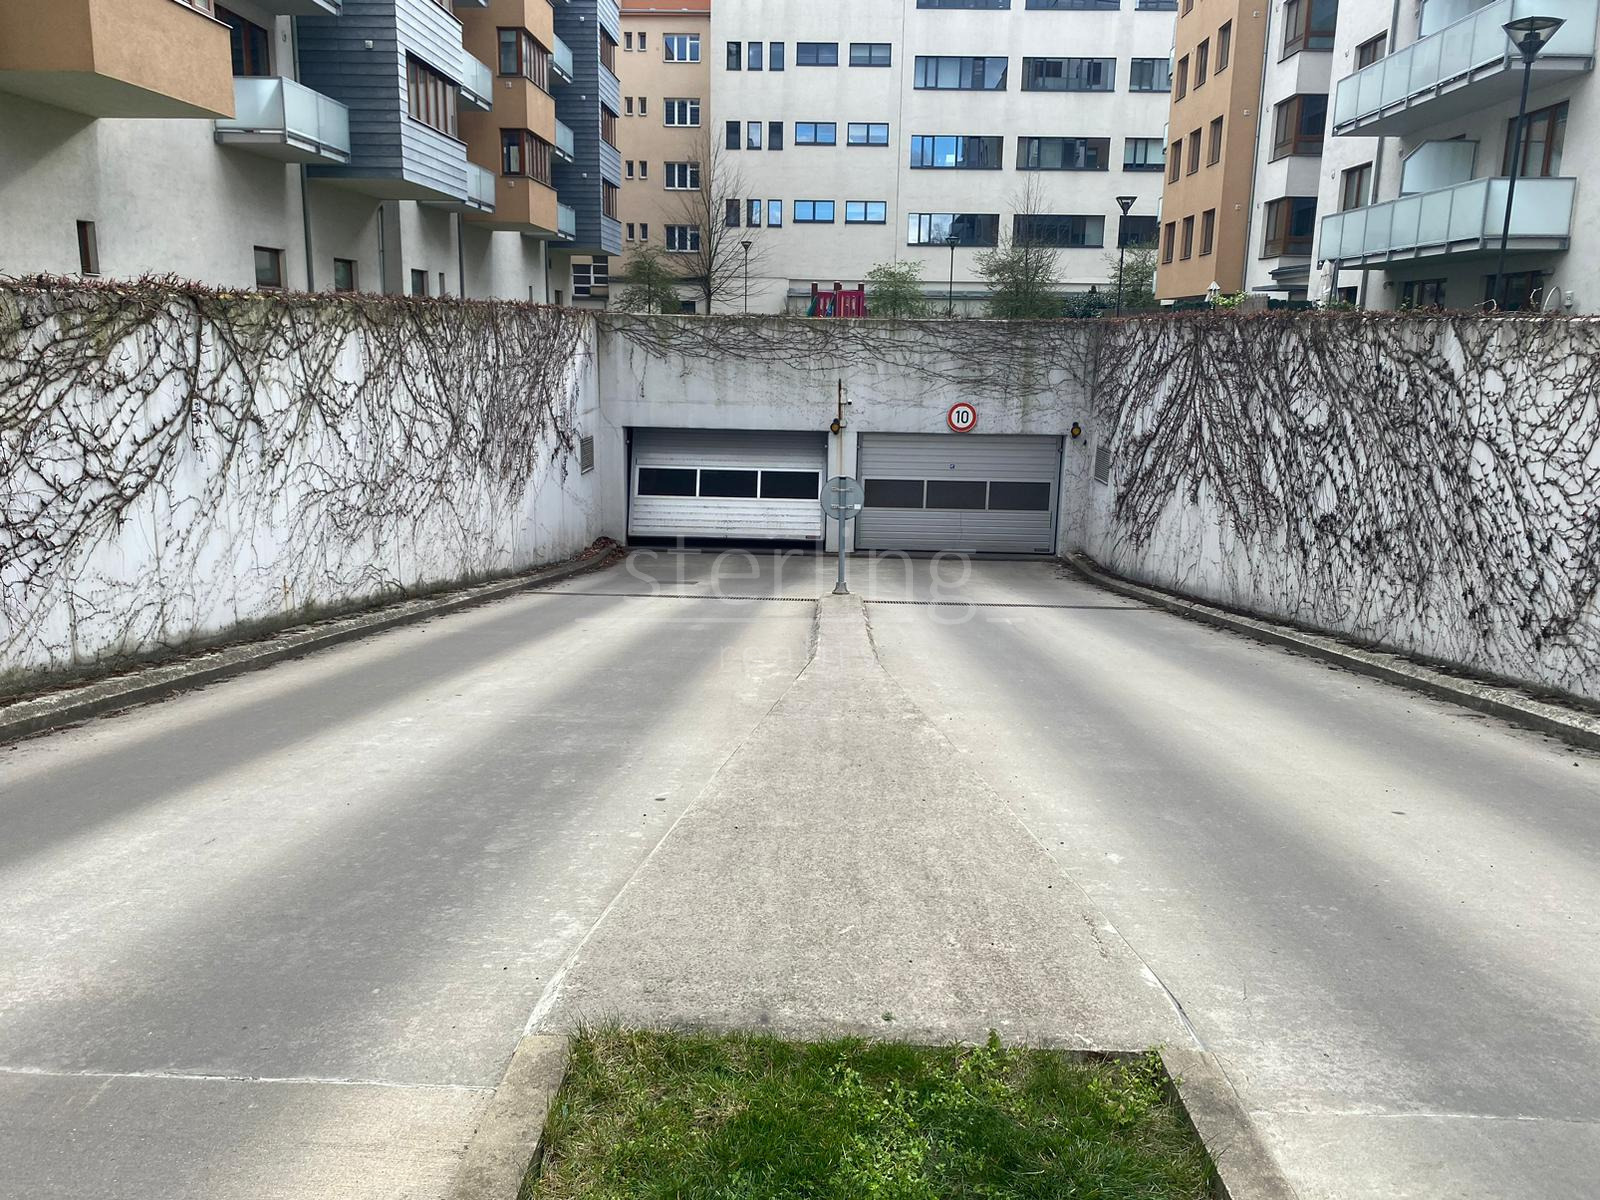 Pronájem krytého parkovacího stání v projektu Vivus, ulice Hanusova, Praha 4